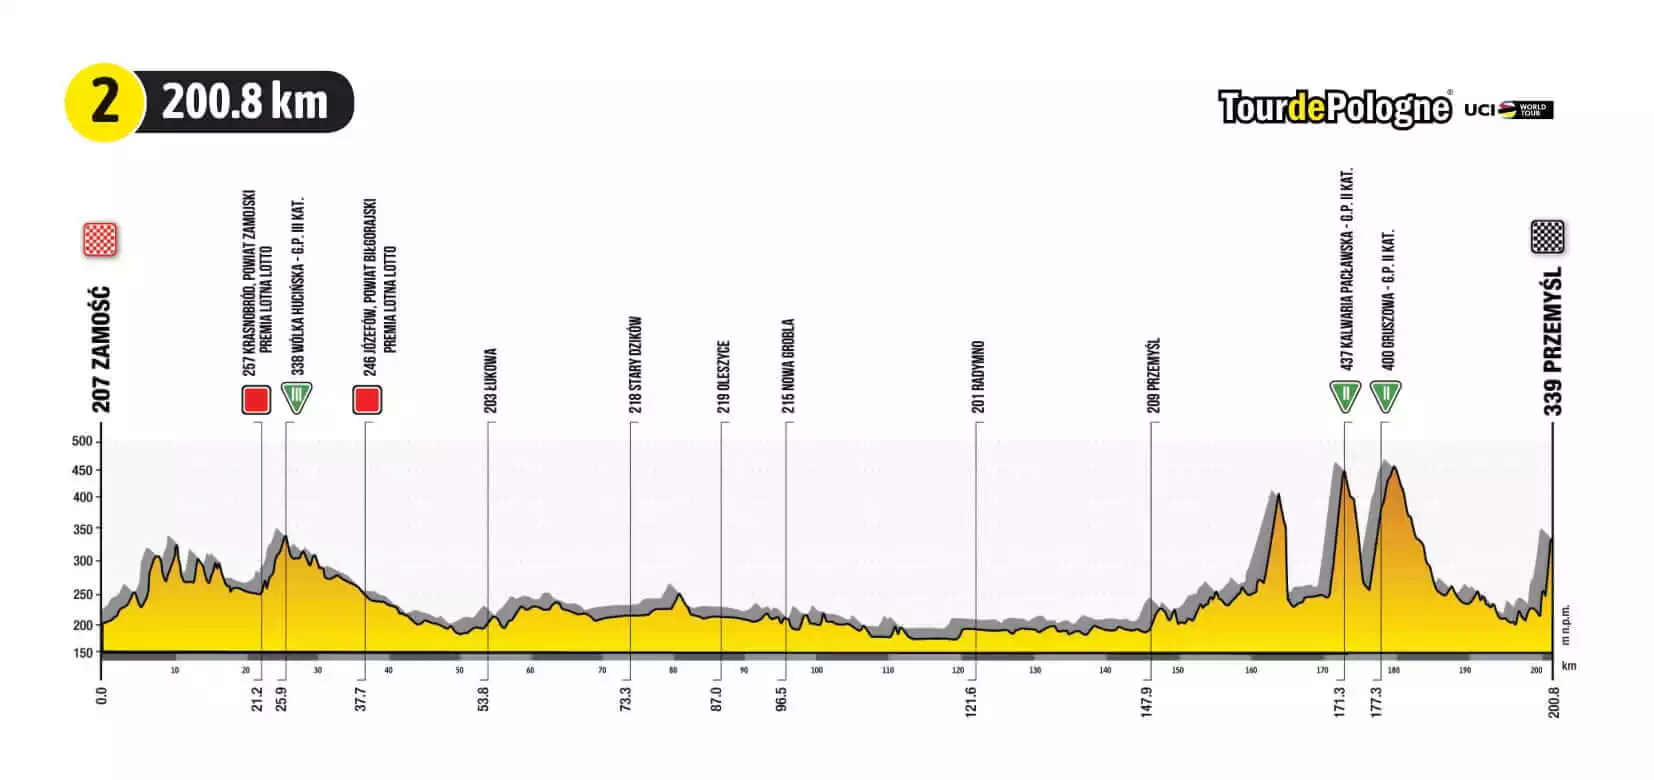 Tour de Pologne 2021 Stage 2 Profile